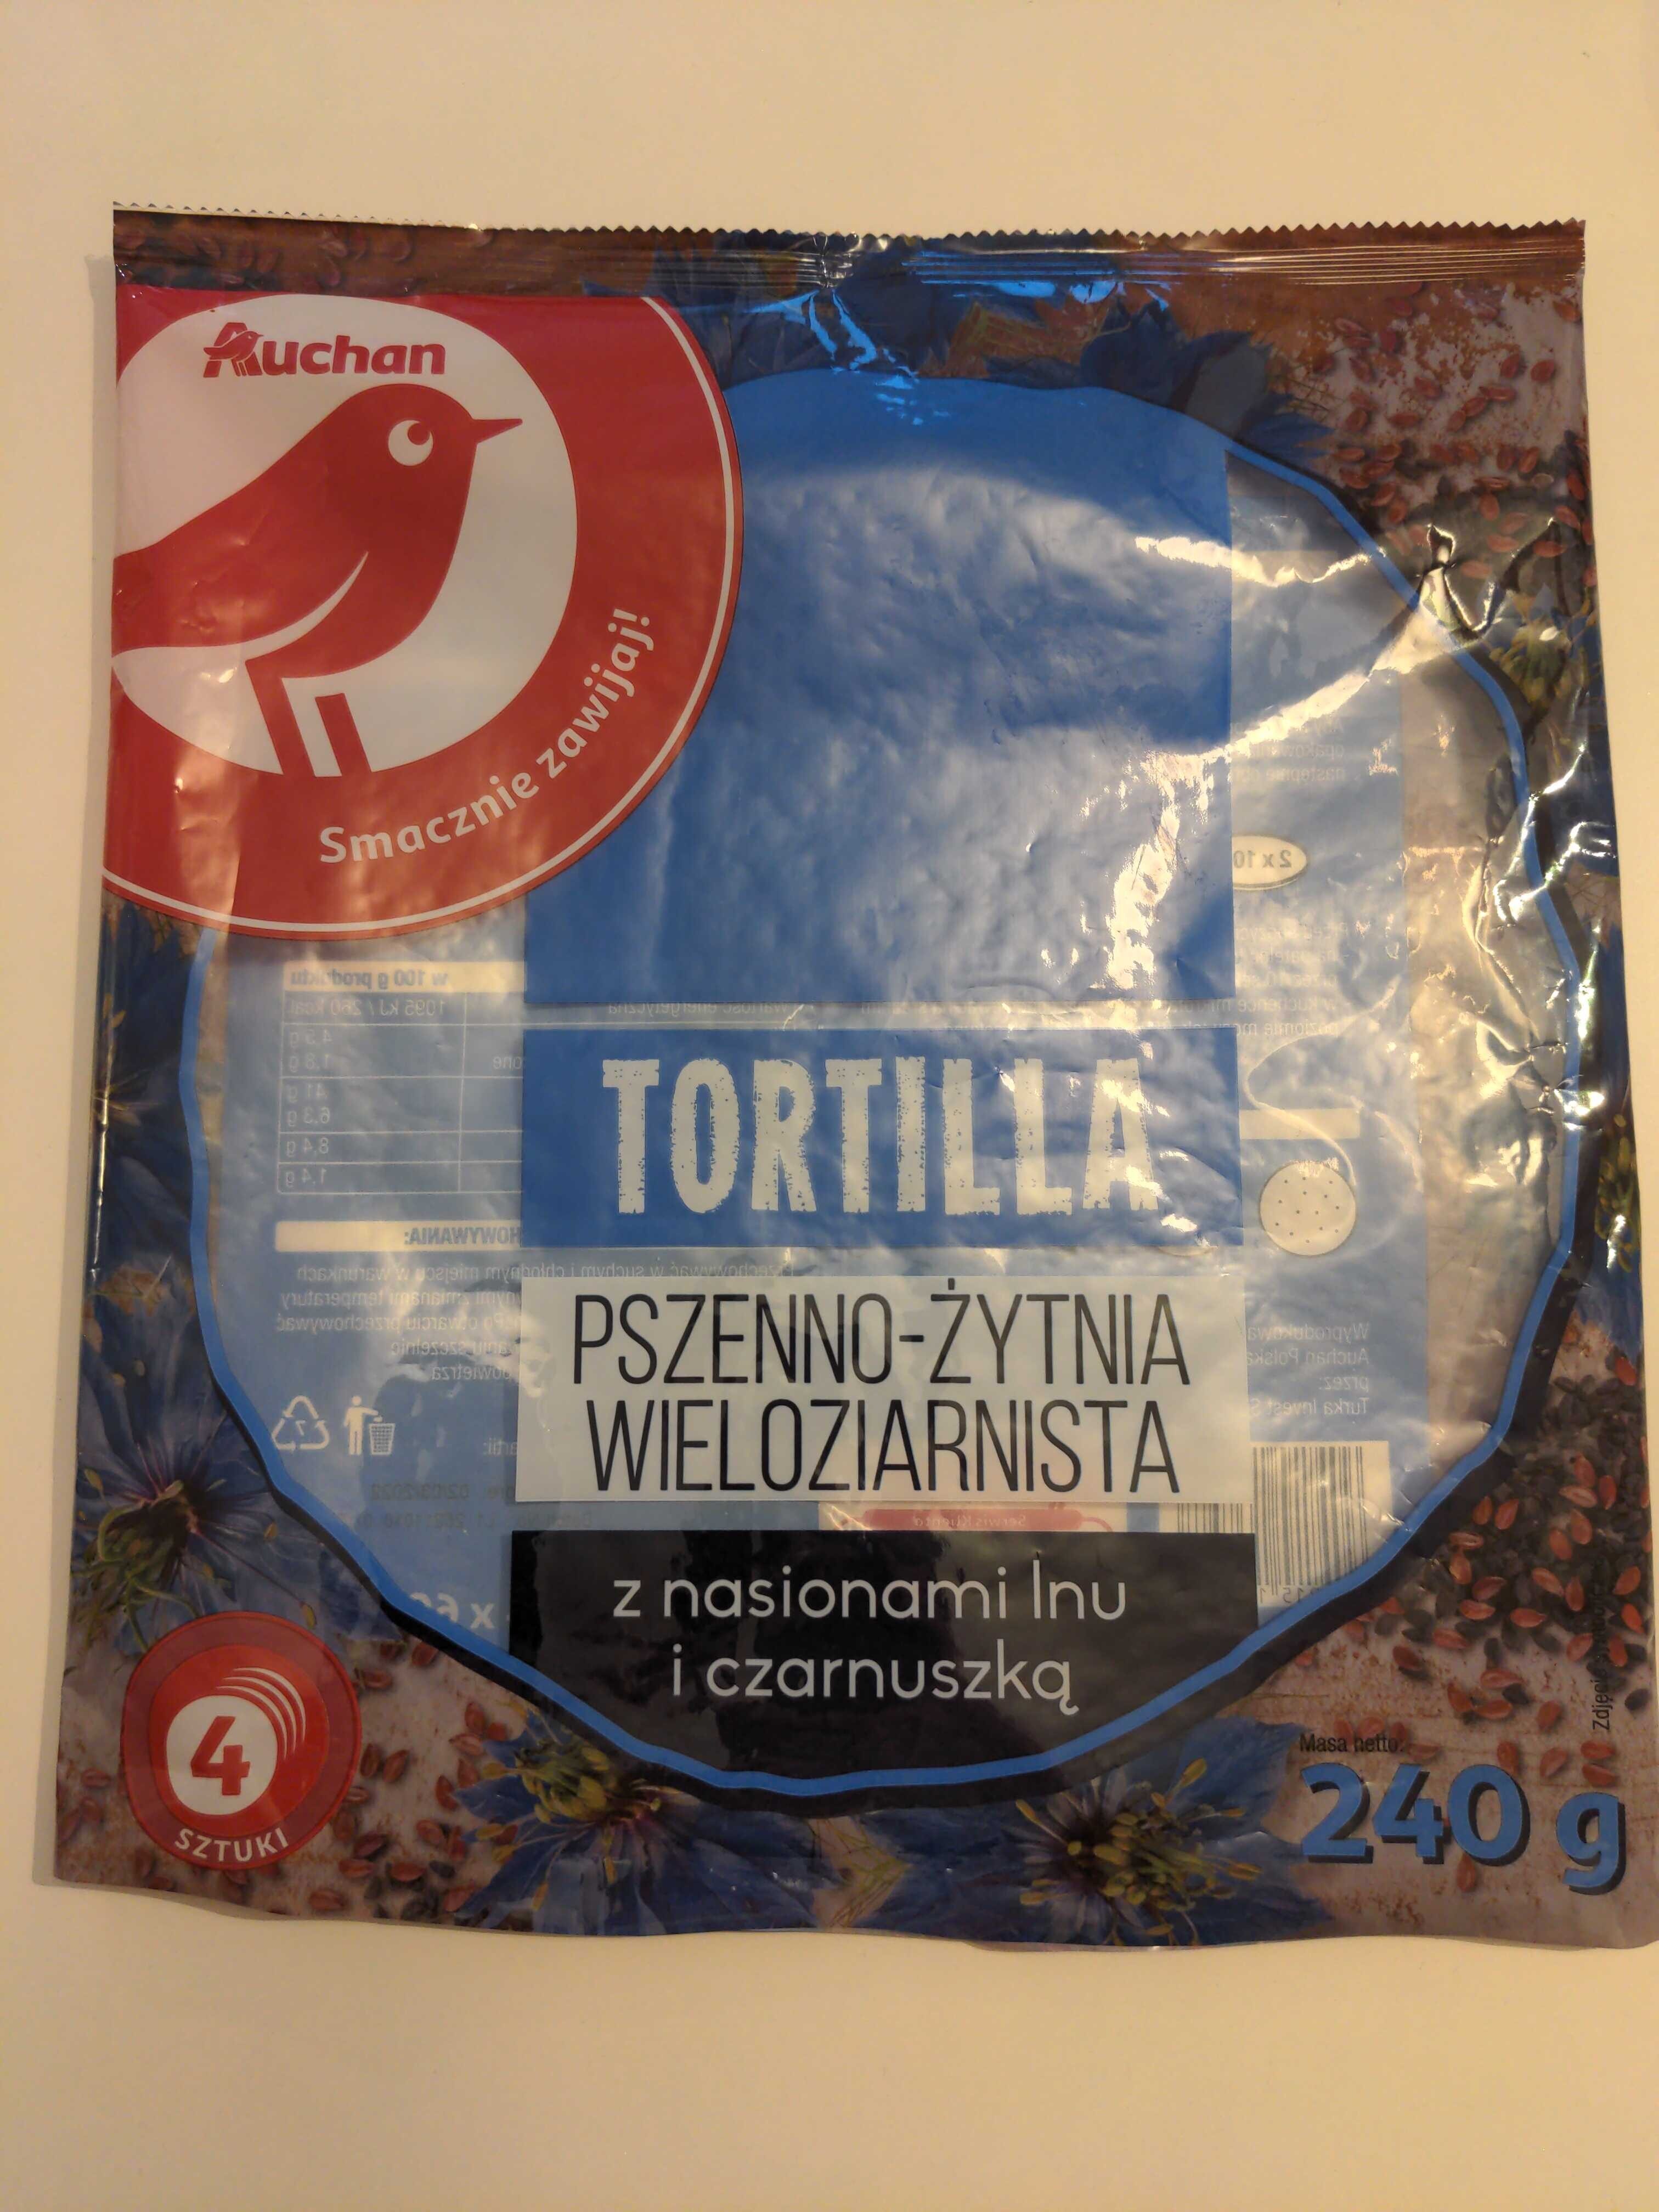 Tortilla Pszenno-Żytnia - Product - pl